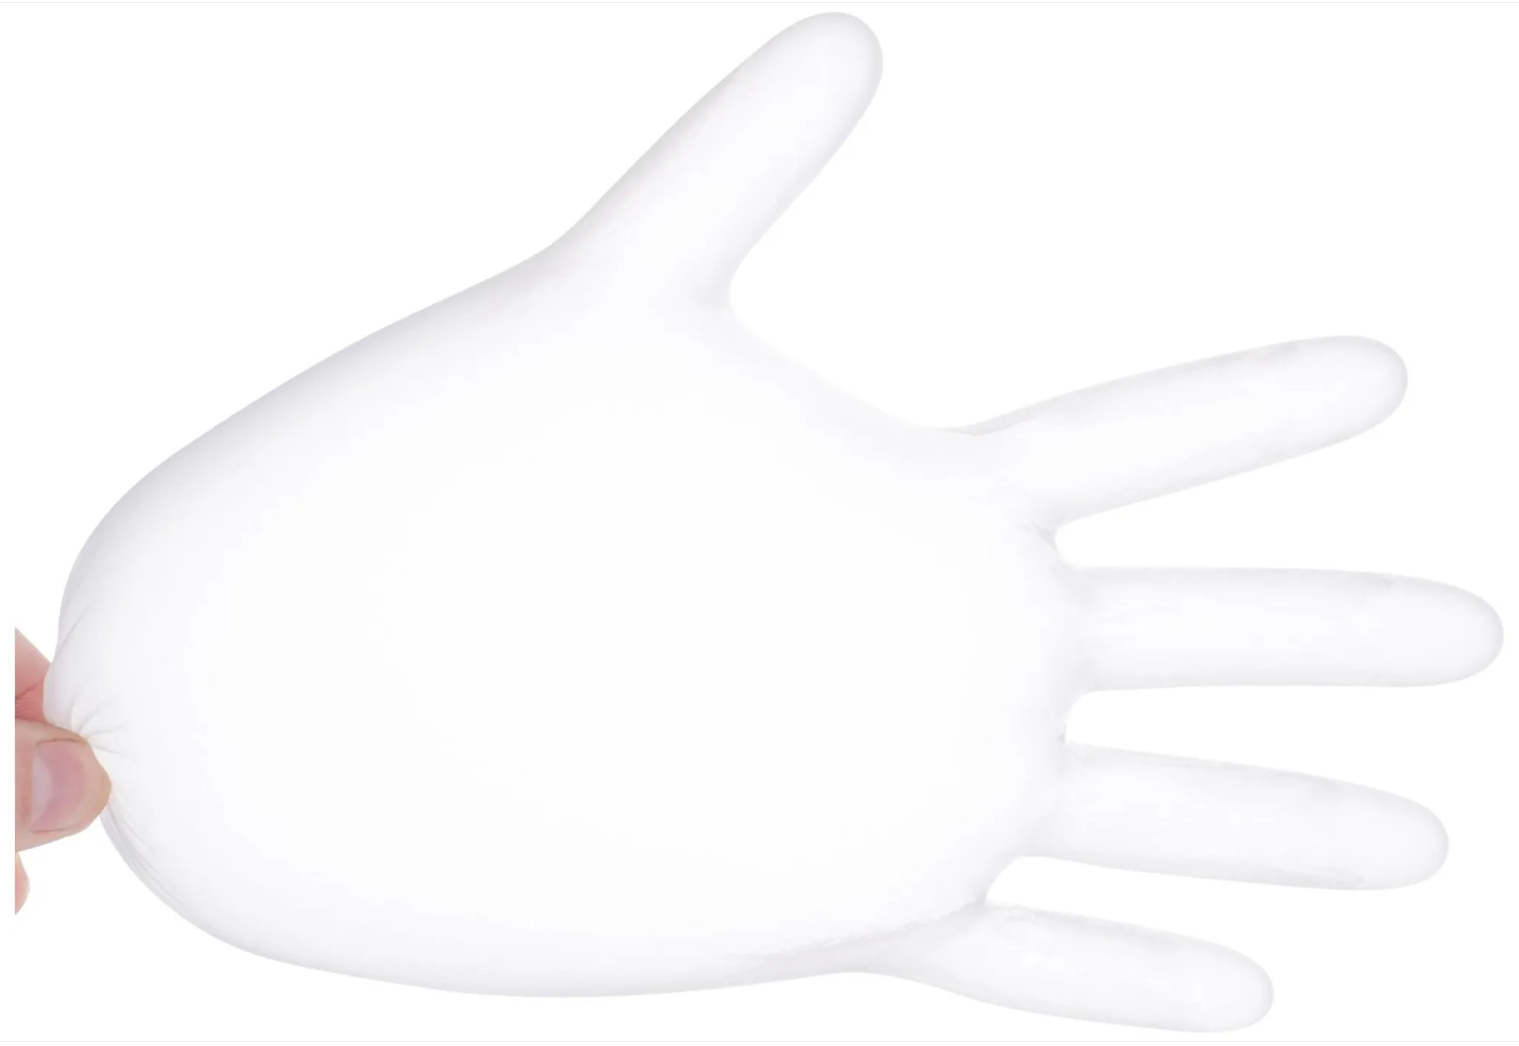 Vinyl Handschoenen – HeroTouch – Medisch wegwerp – Wegwerphandschoenen – Medische disposable medical vinyl gloves – L Poedervrij vynil latexvrij – 1000 stuks